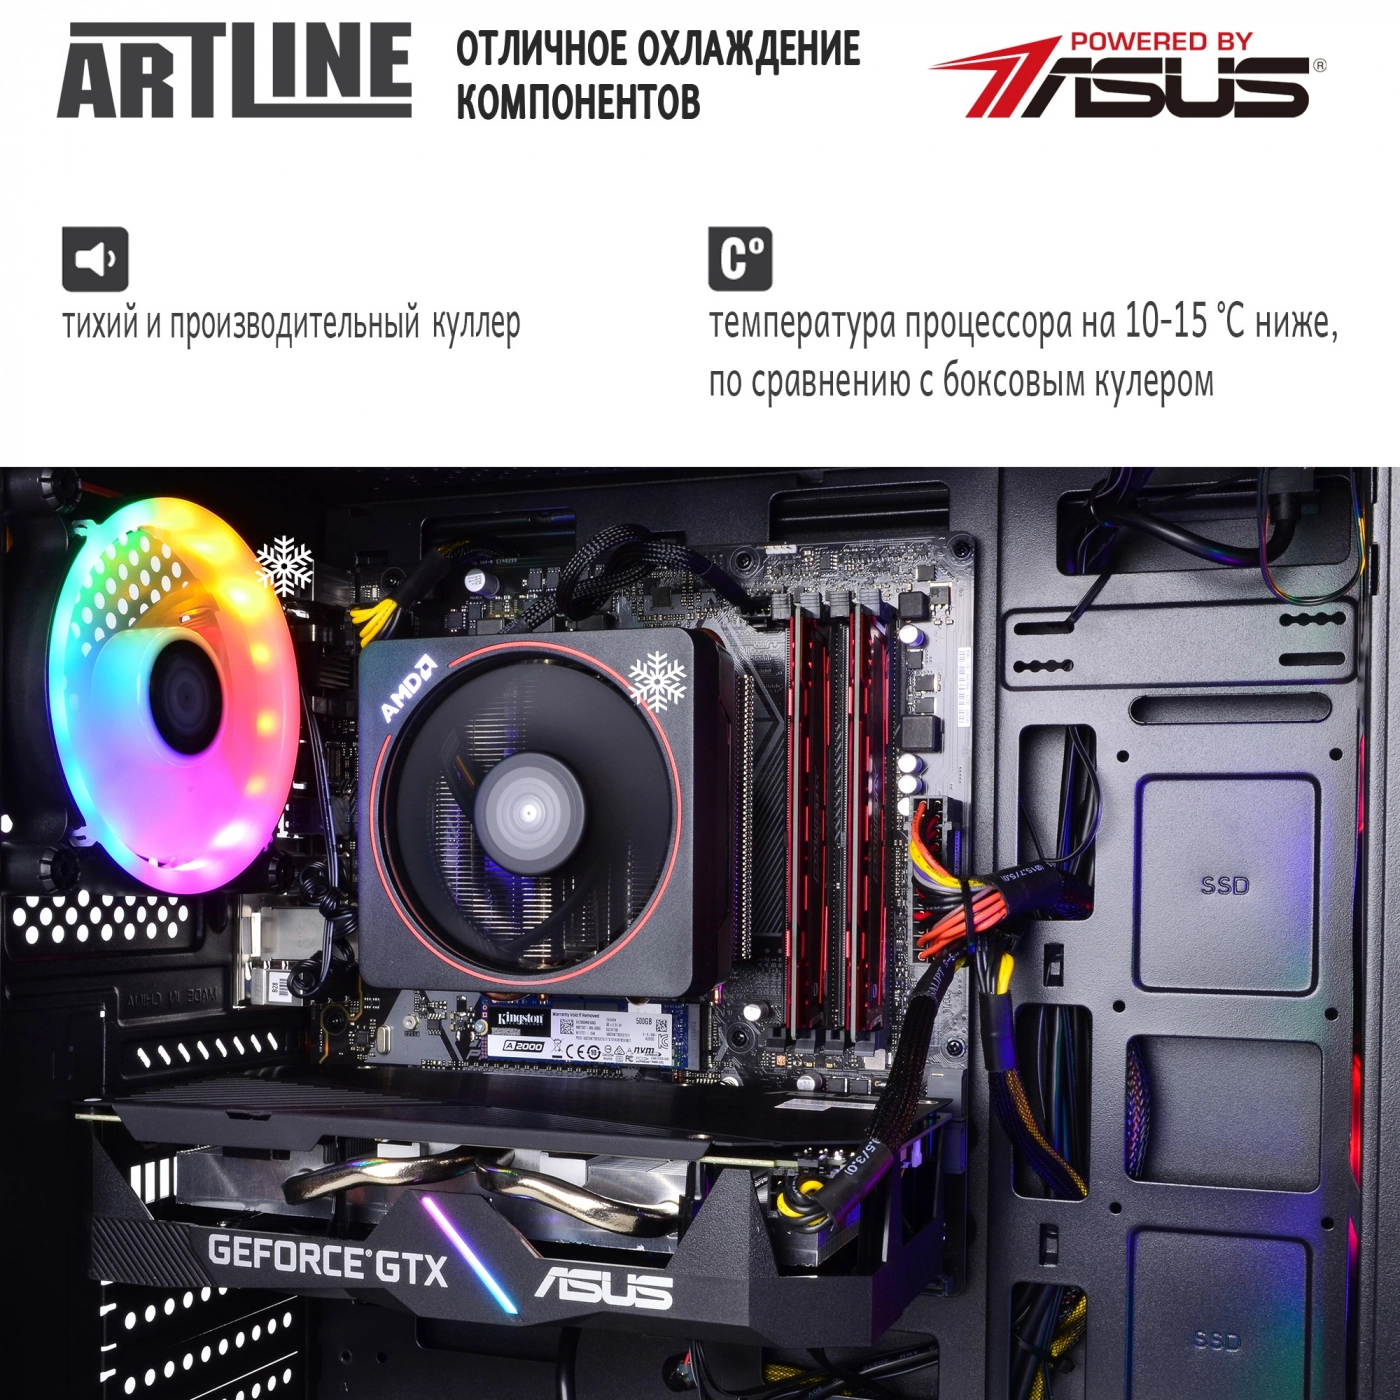 Купить Компьютер ARTLINE Gaming X67v14 - фото 7